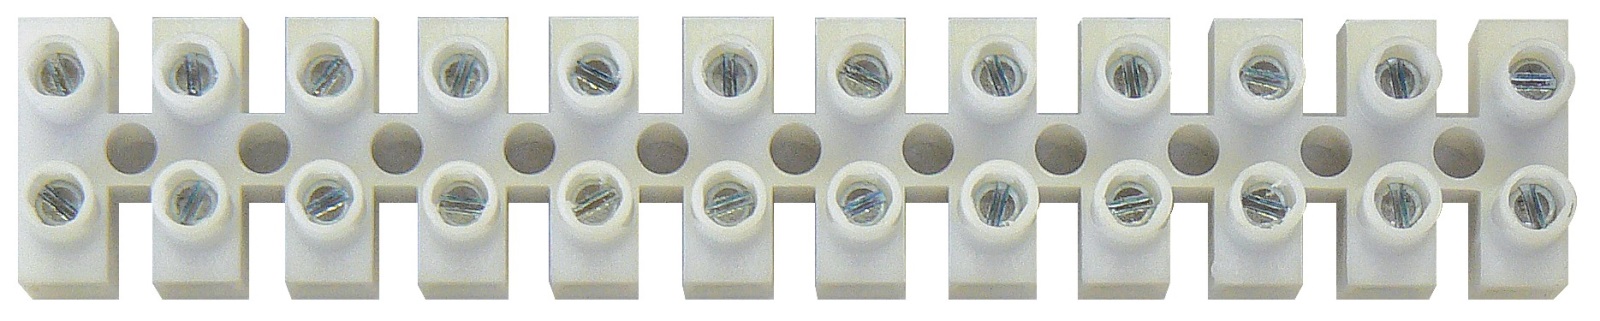 Svorkovnice 12x16,0 mm bílá, A4004